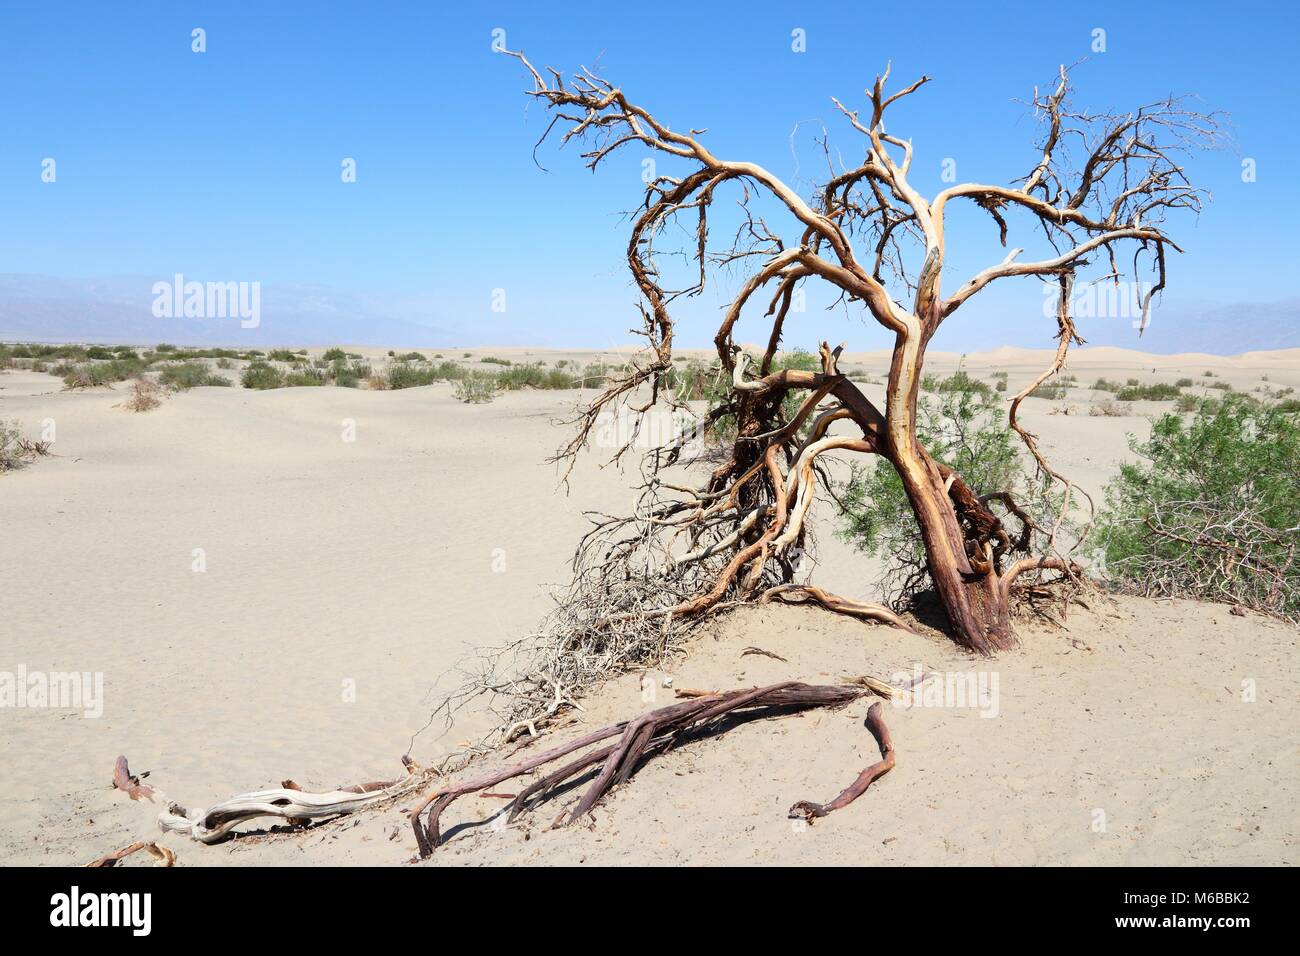 Désert de Mojave en Californie, États-Unis. Death Valley National Park (comté d'Inyo) - désert de sable à l'arbre mort. Banque D'Images